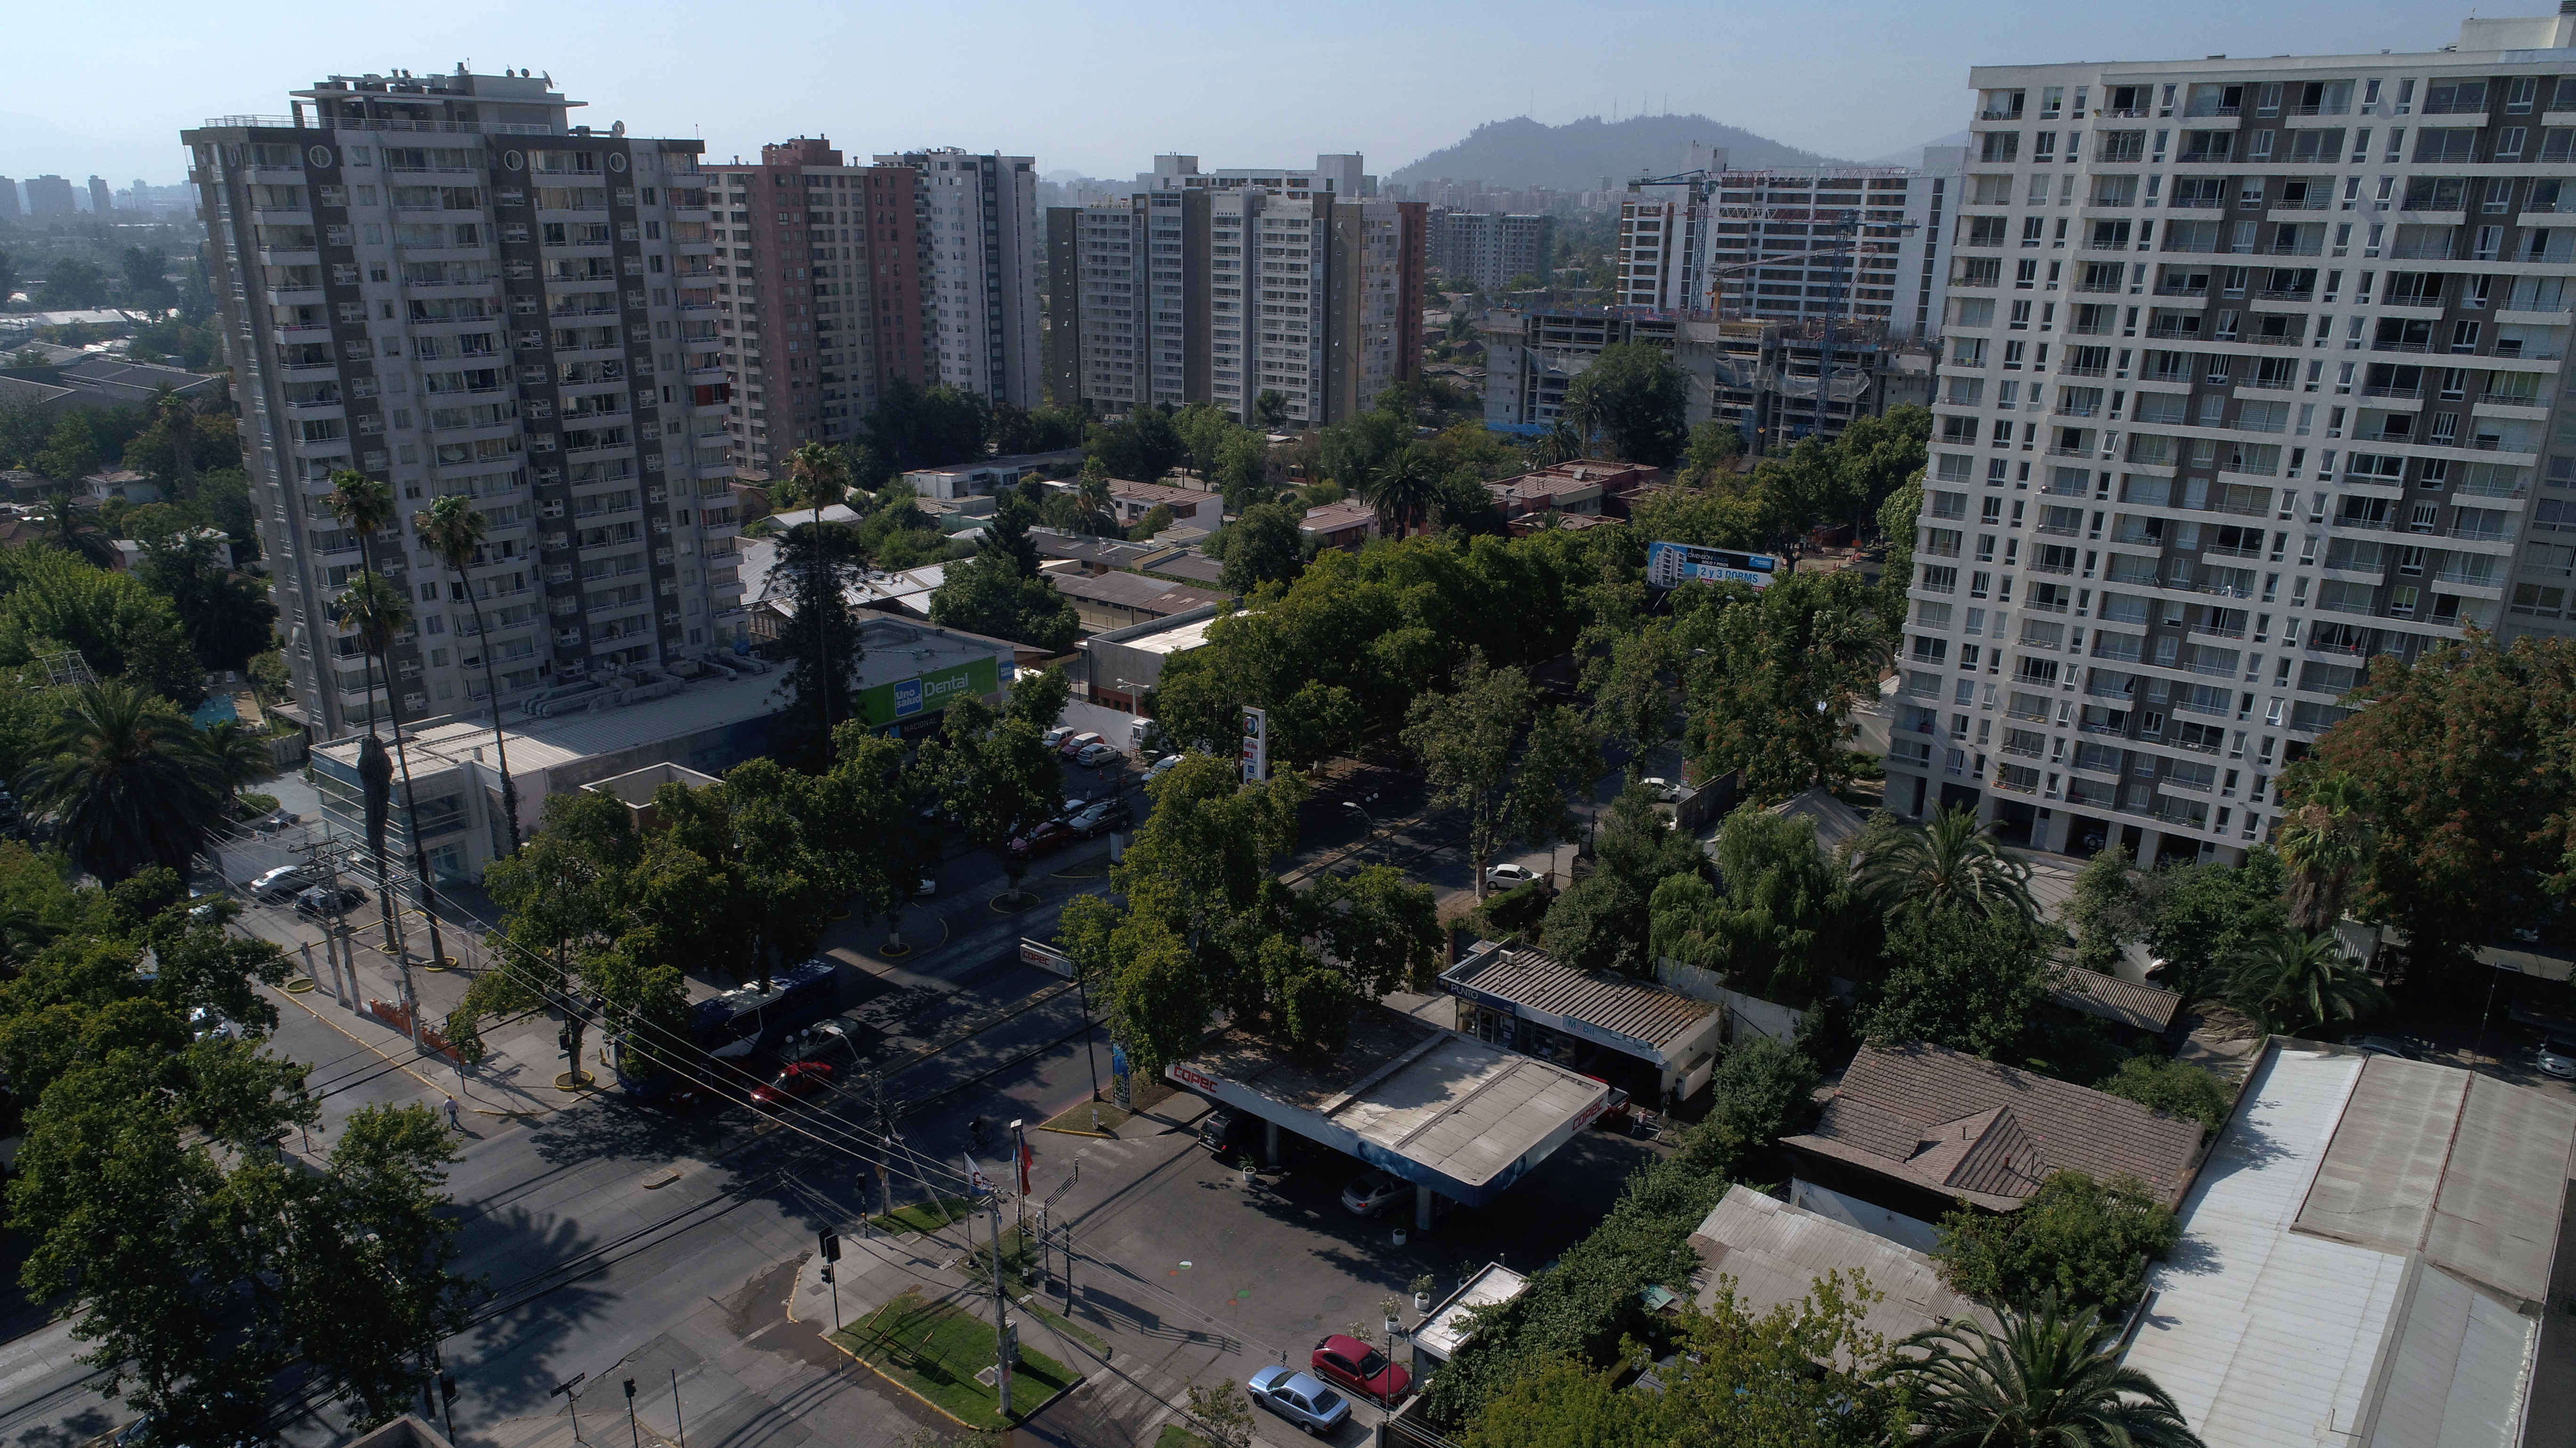 Comprar una vivienda en Chile es "severamente no alcanzable": Expertos debaten y analizan crítico escenario